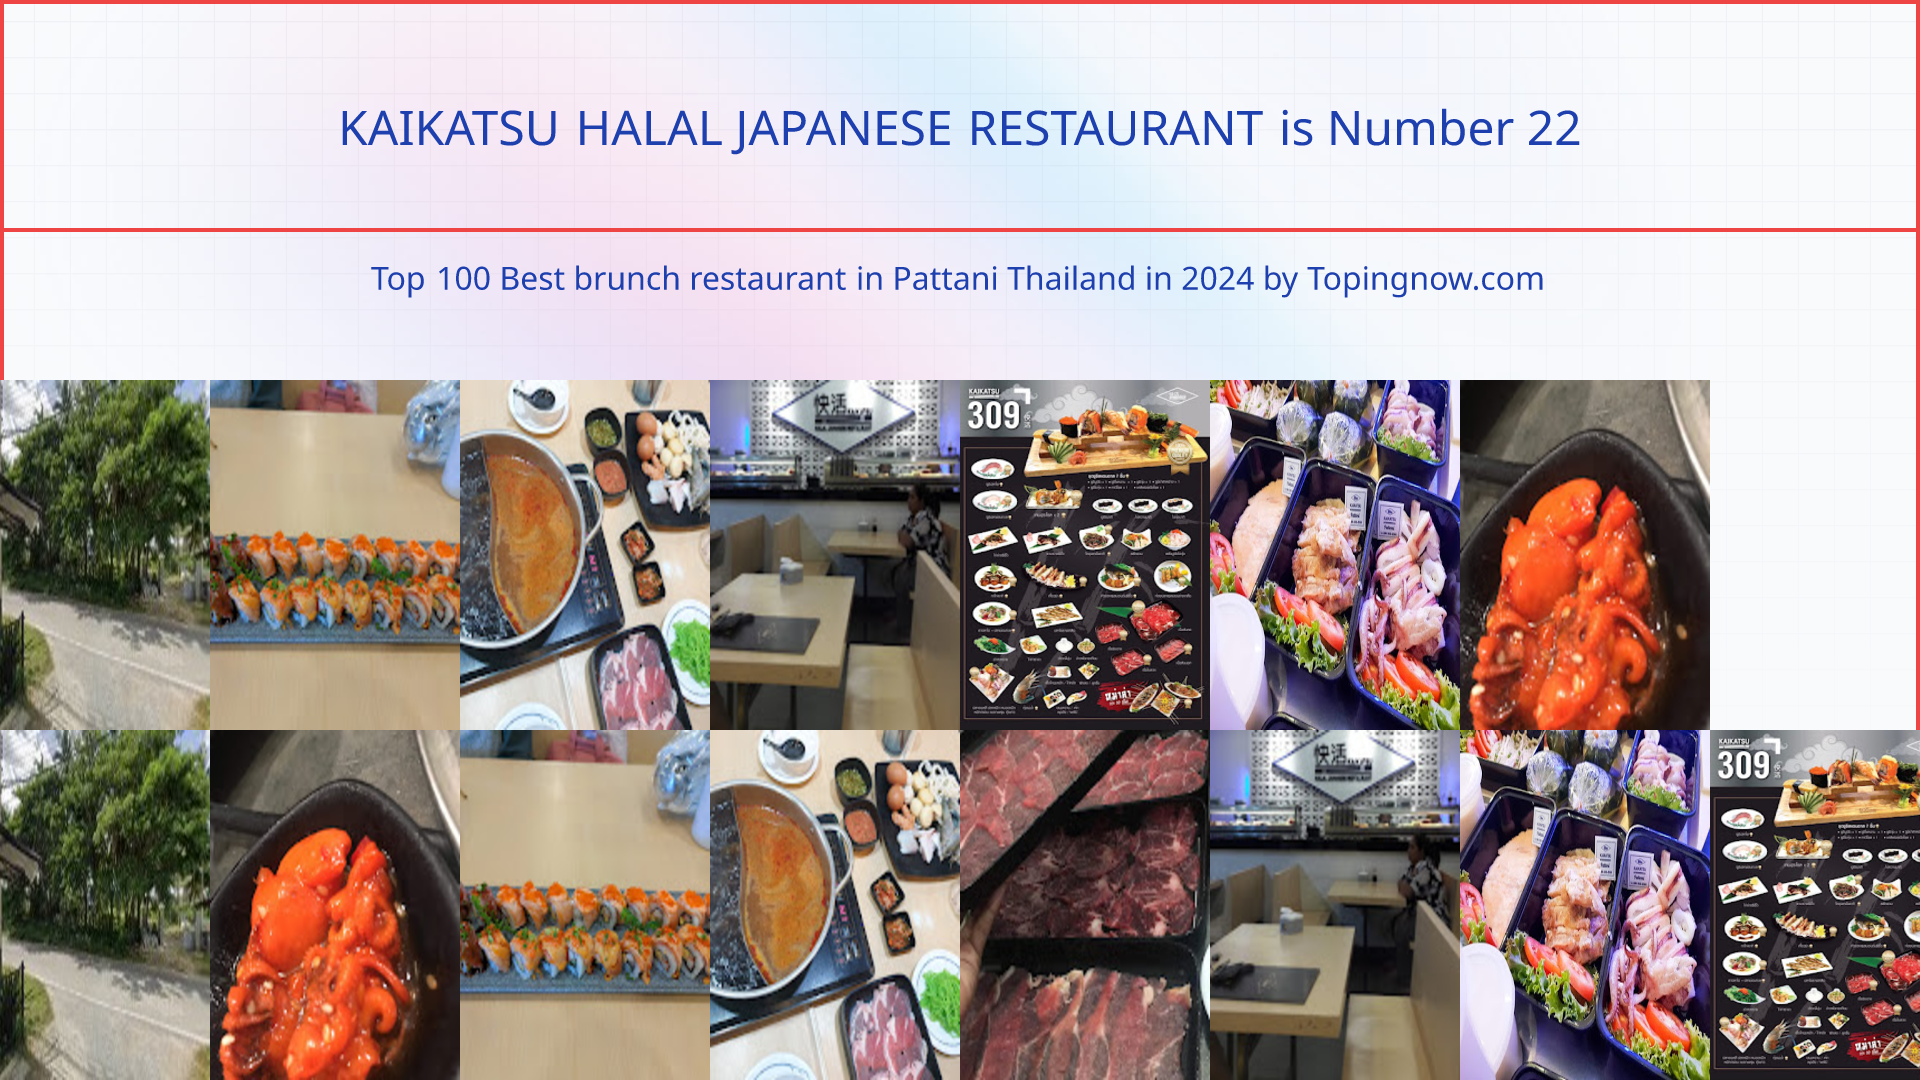 KAIKATSU HALAL JAPANESE RESTAURANT: Top 100 Best brunch restaurant in Pattani Thailand in 2024